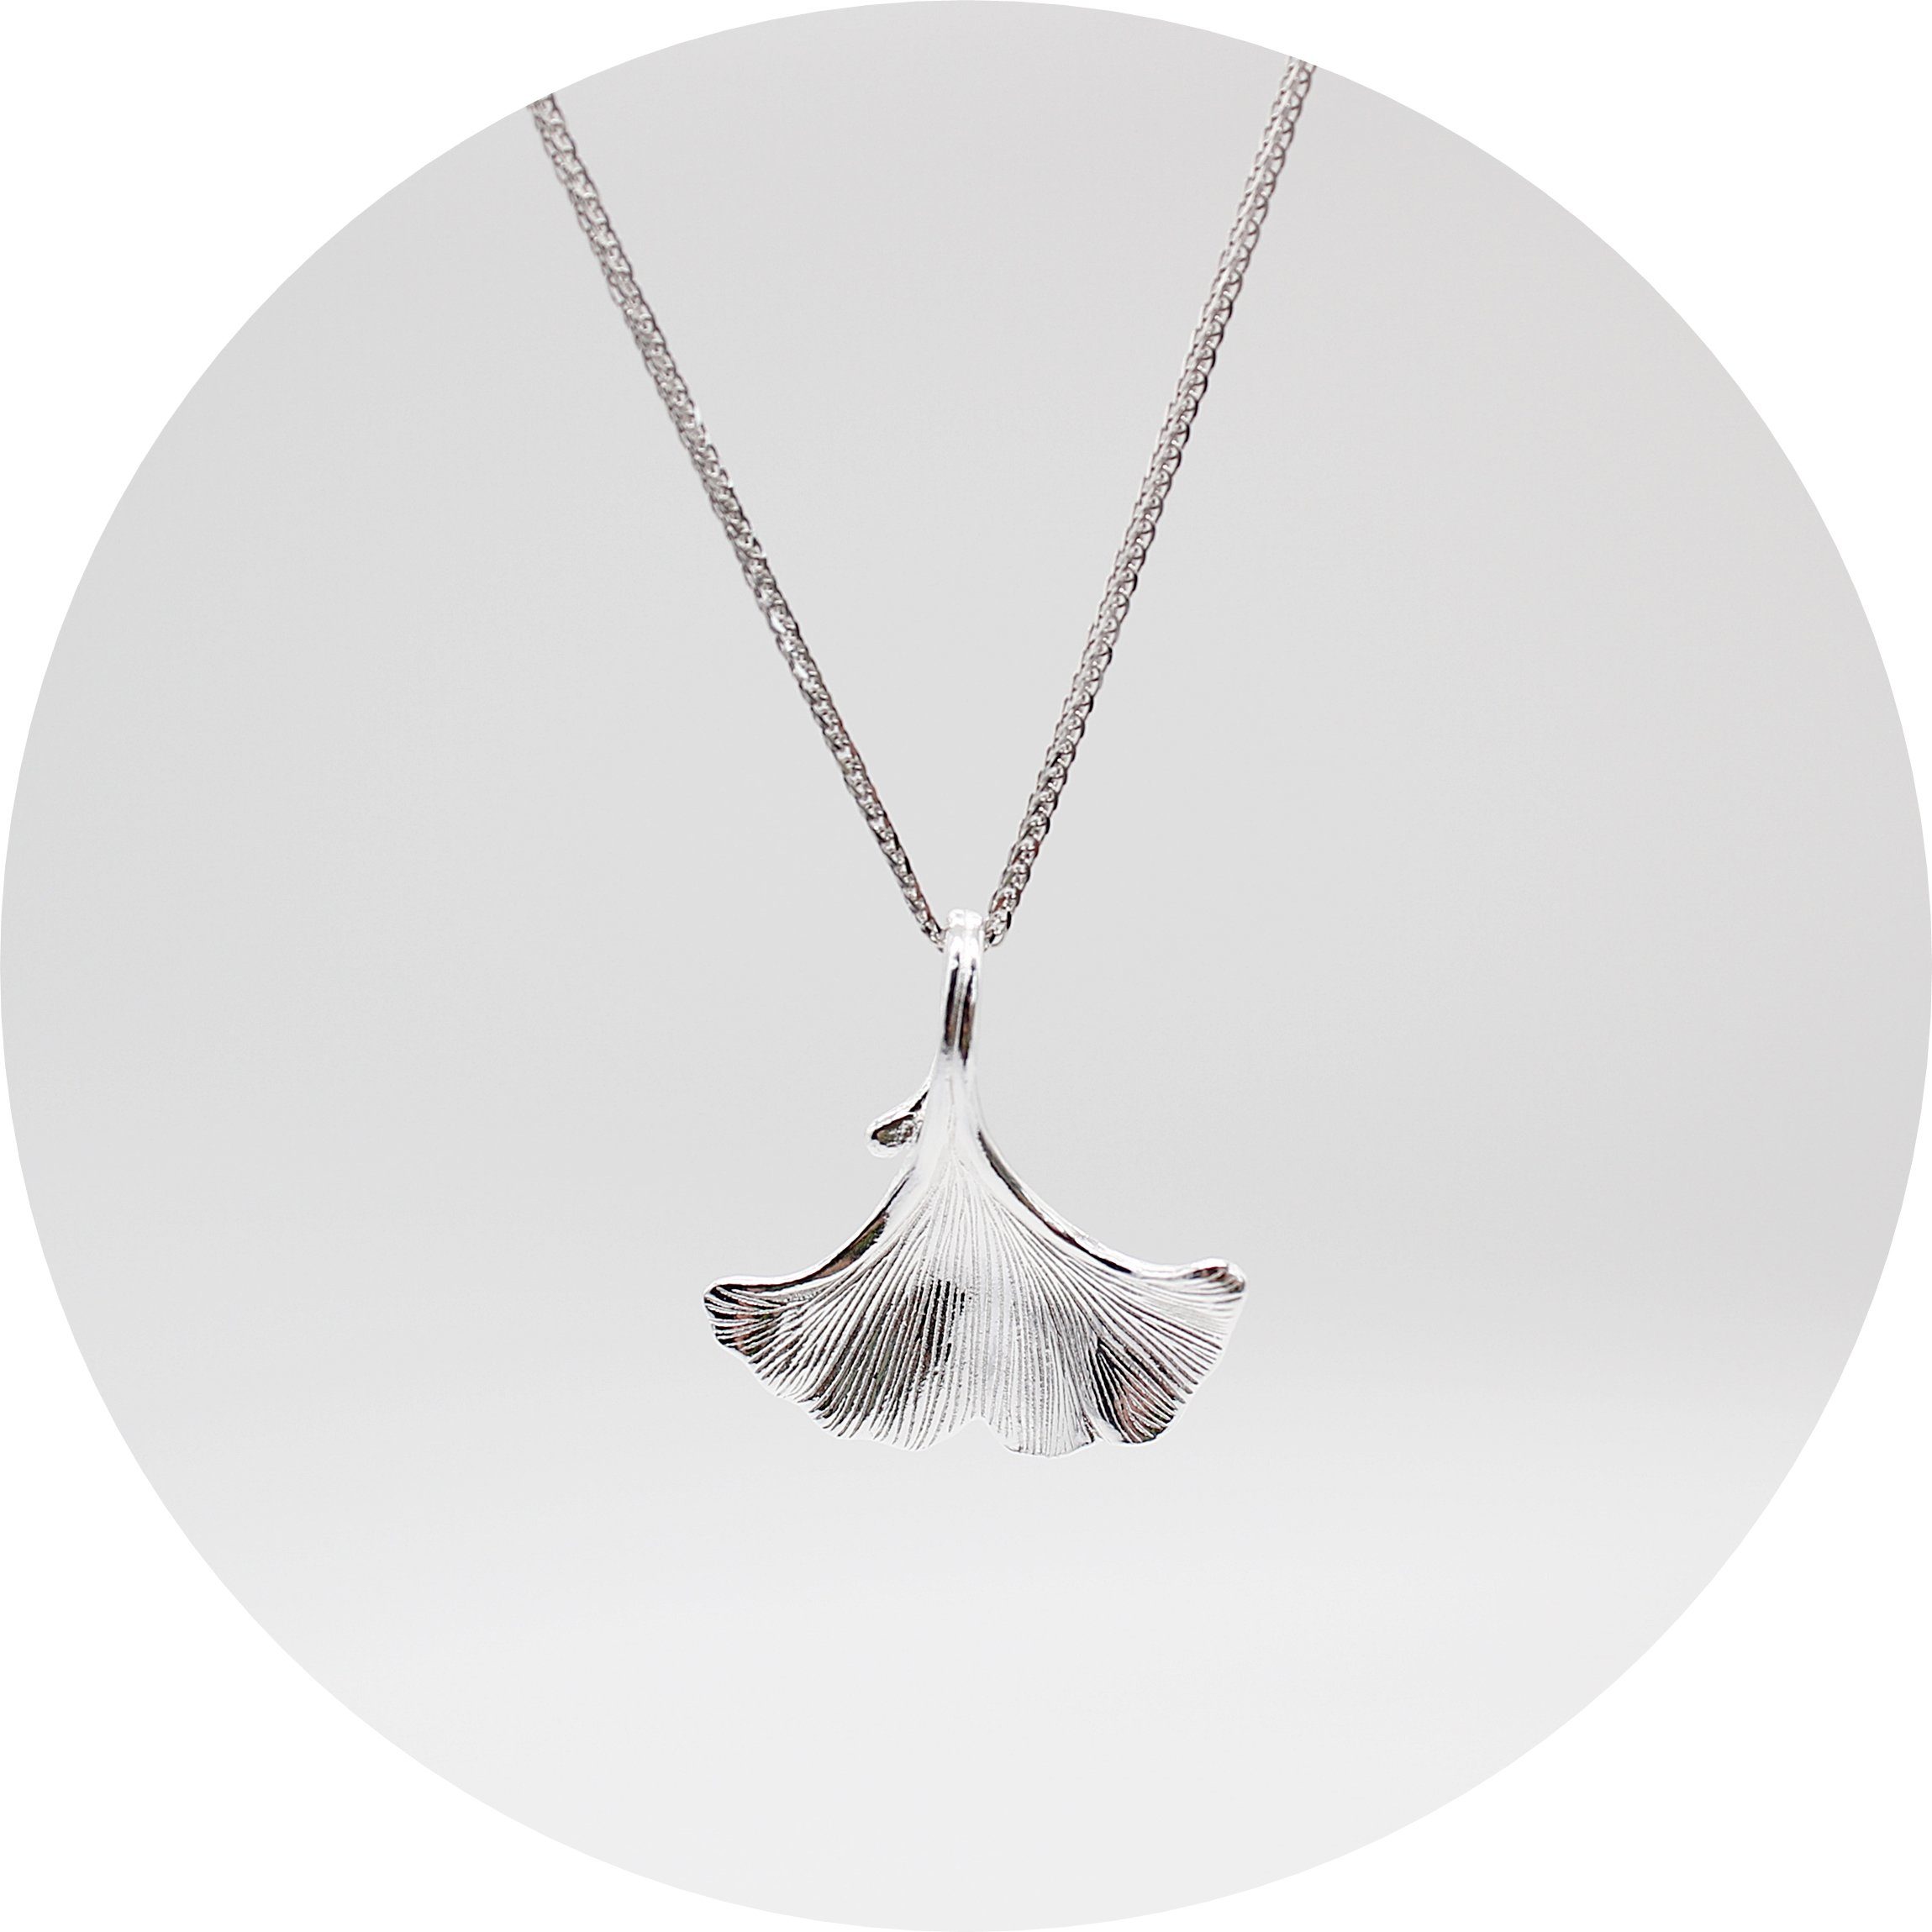 ELLAWIL Kette mit Anhänger Silberkette Kette mit Ginkgoblatt Anhänger Damen Zirkonia Halskette (Kettenlänge 50 cm, Sterling Silber 925), inklusive Geschenkschachtel